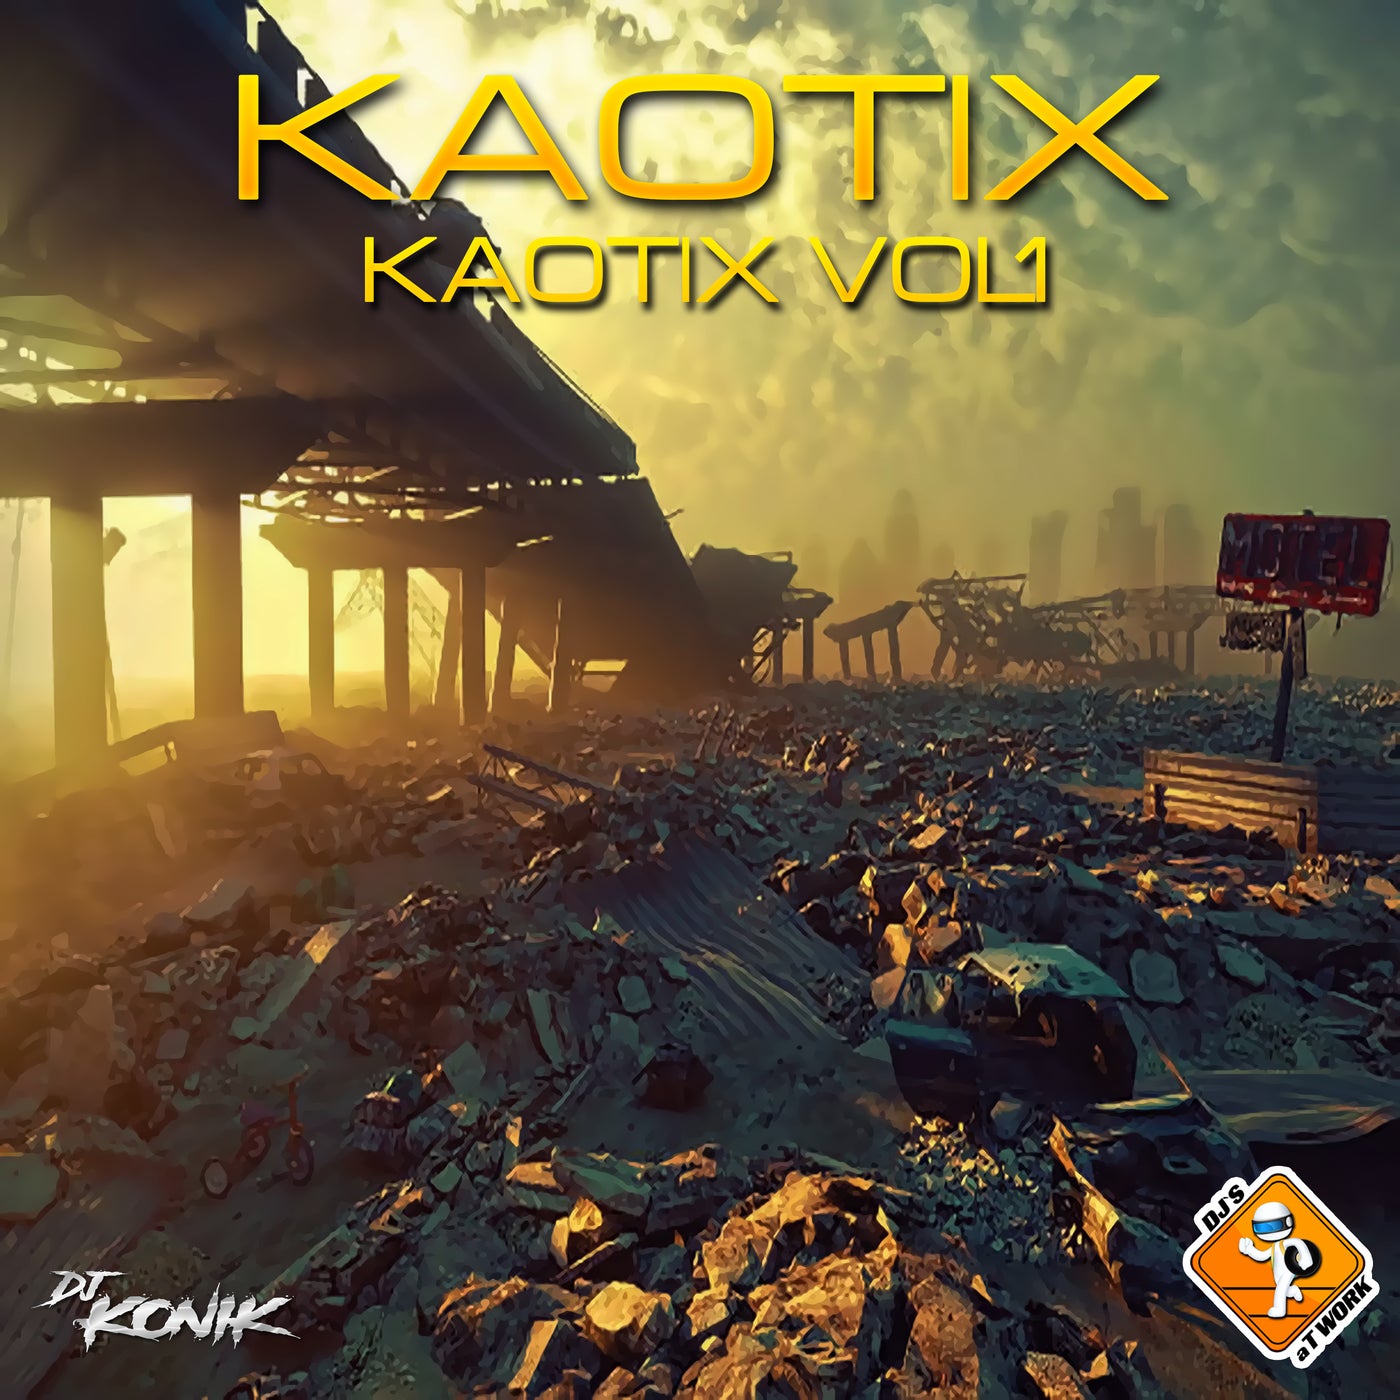 Kaotix Vol. 1